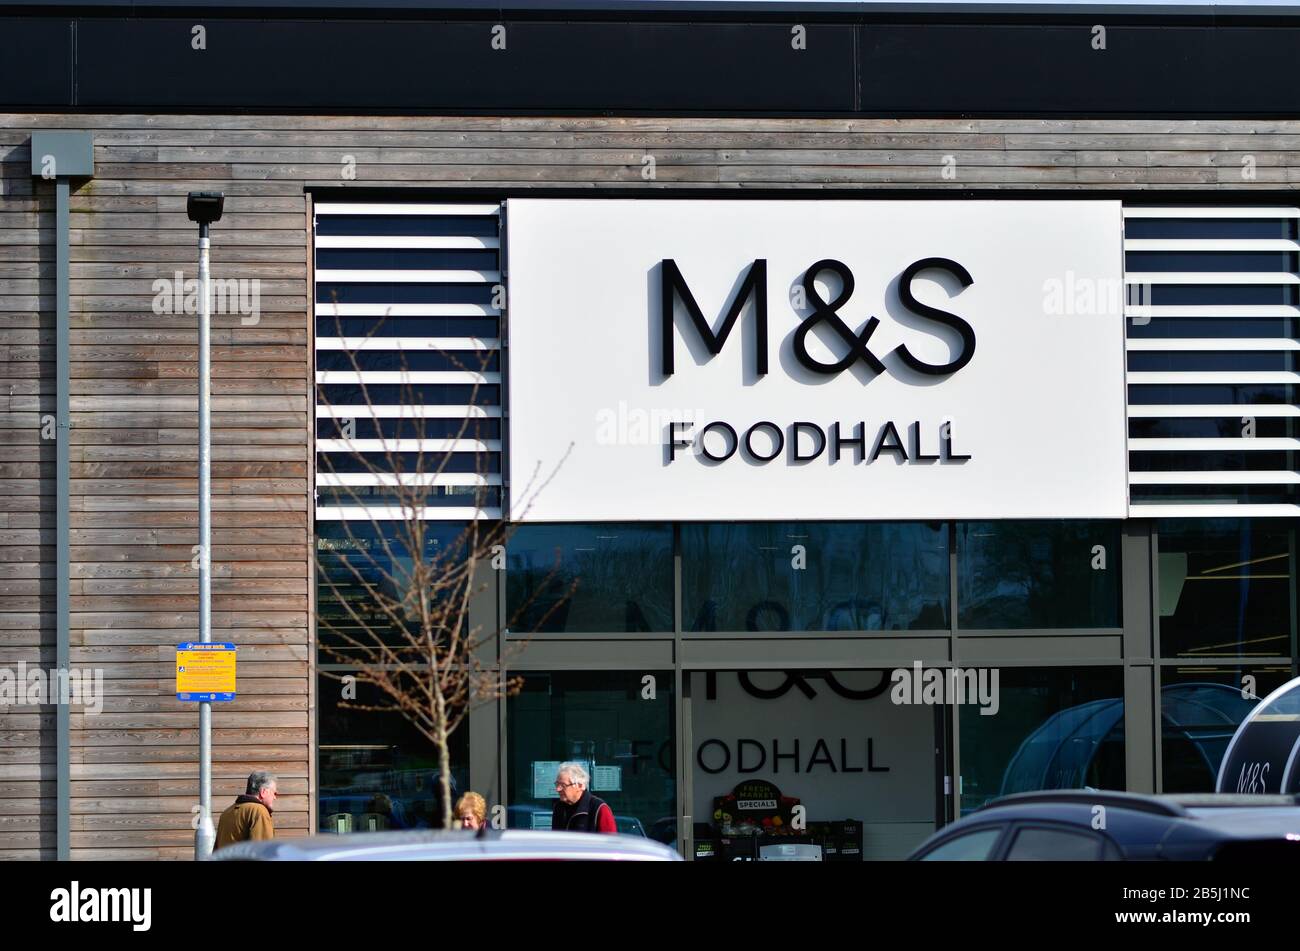 Stone / Regno Unito - 8 marzo 2020: M&S Foodhall segno all'ingresso del supermercato visto in piccola città britannica Stone in Staffordshire. Foto Stock